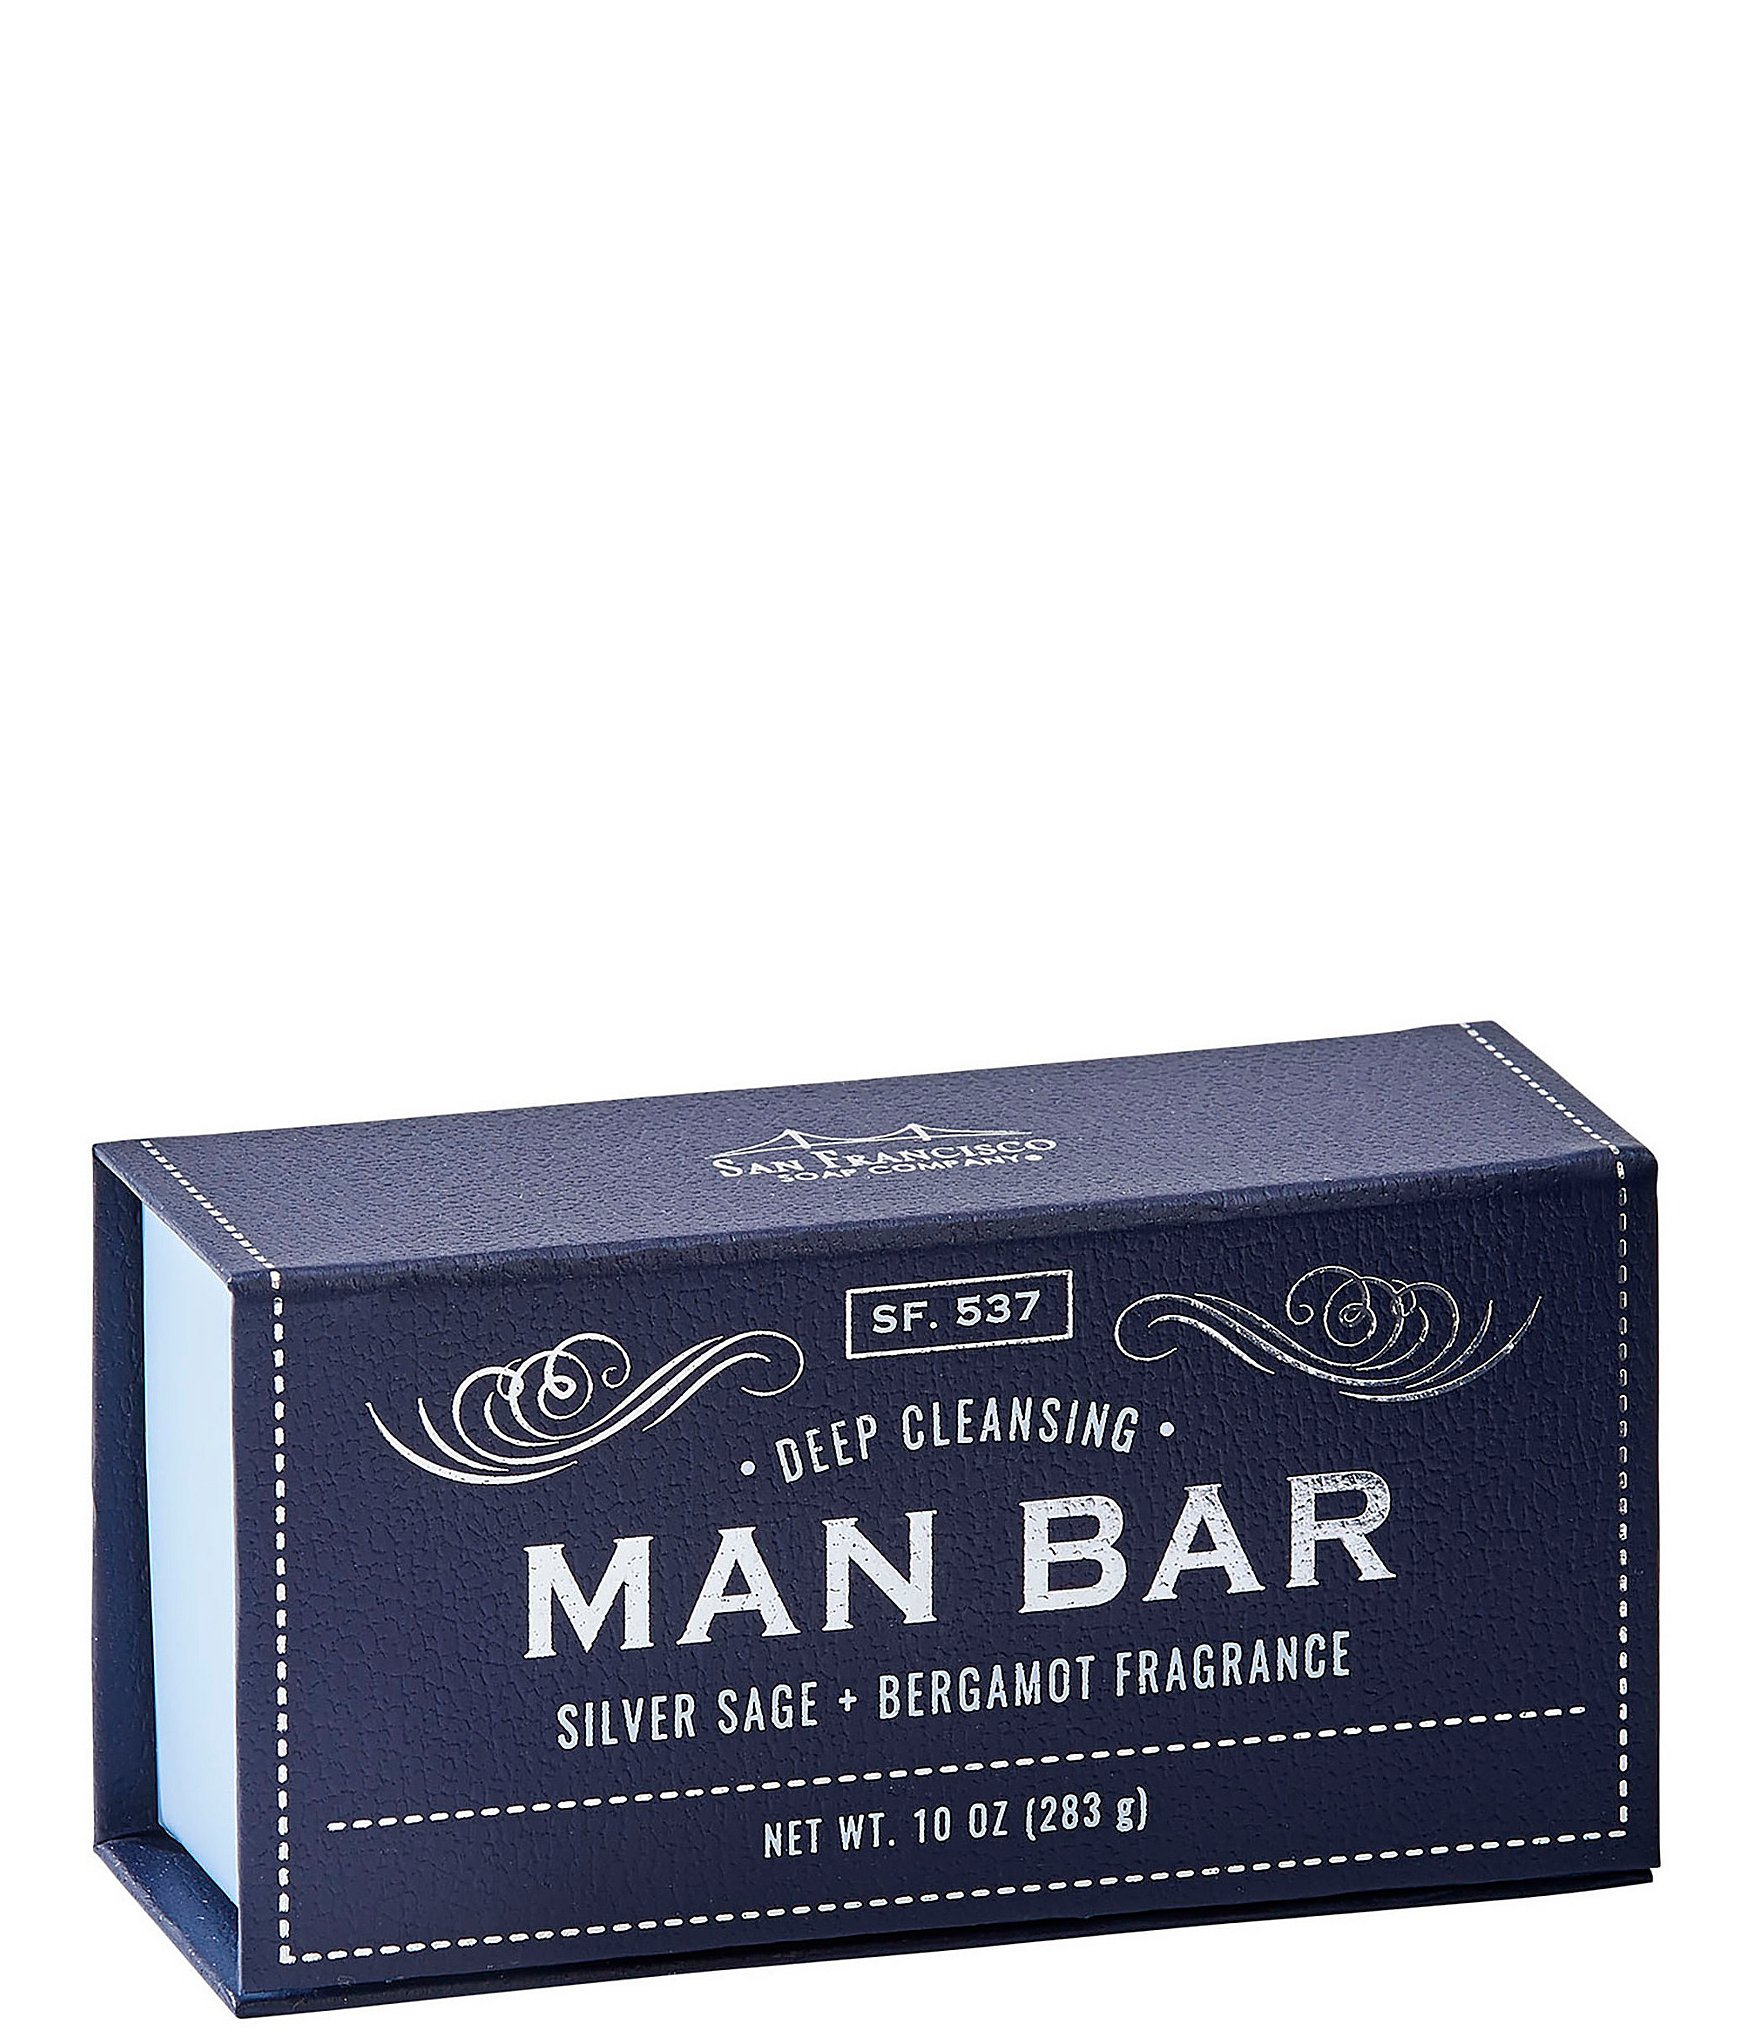 La Tierra Bar Soap (formerly Man Bar)